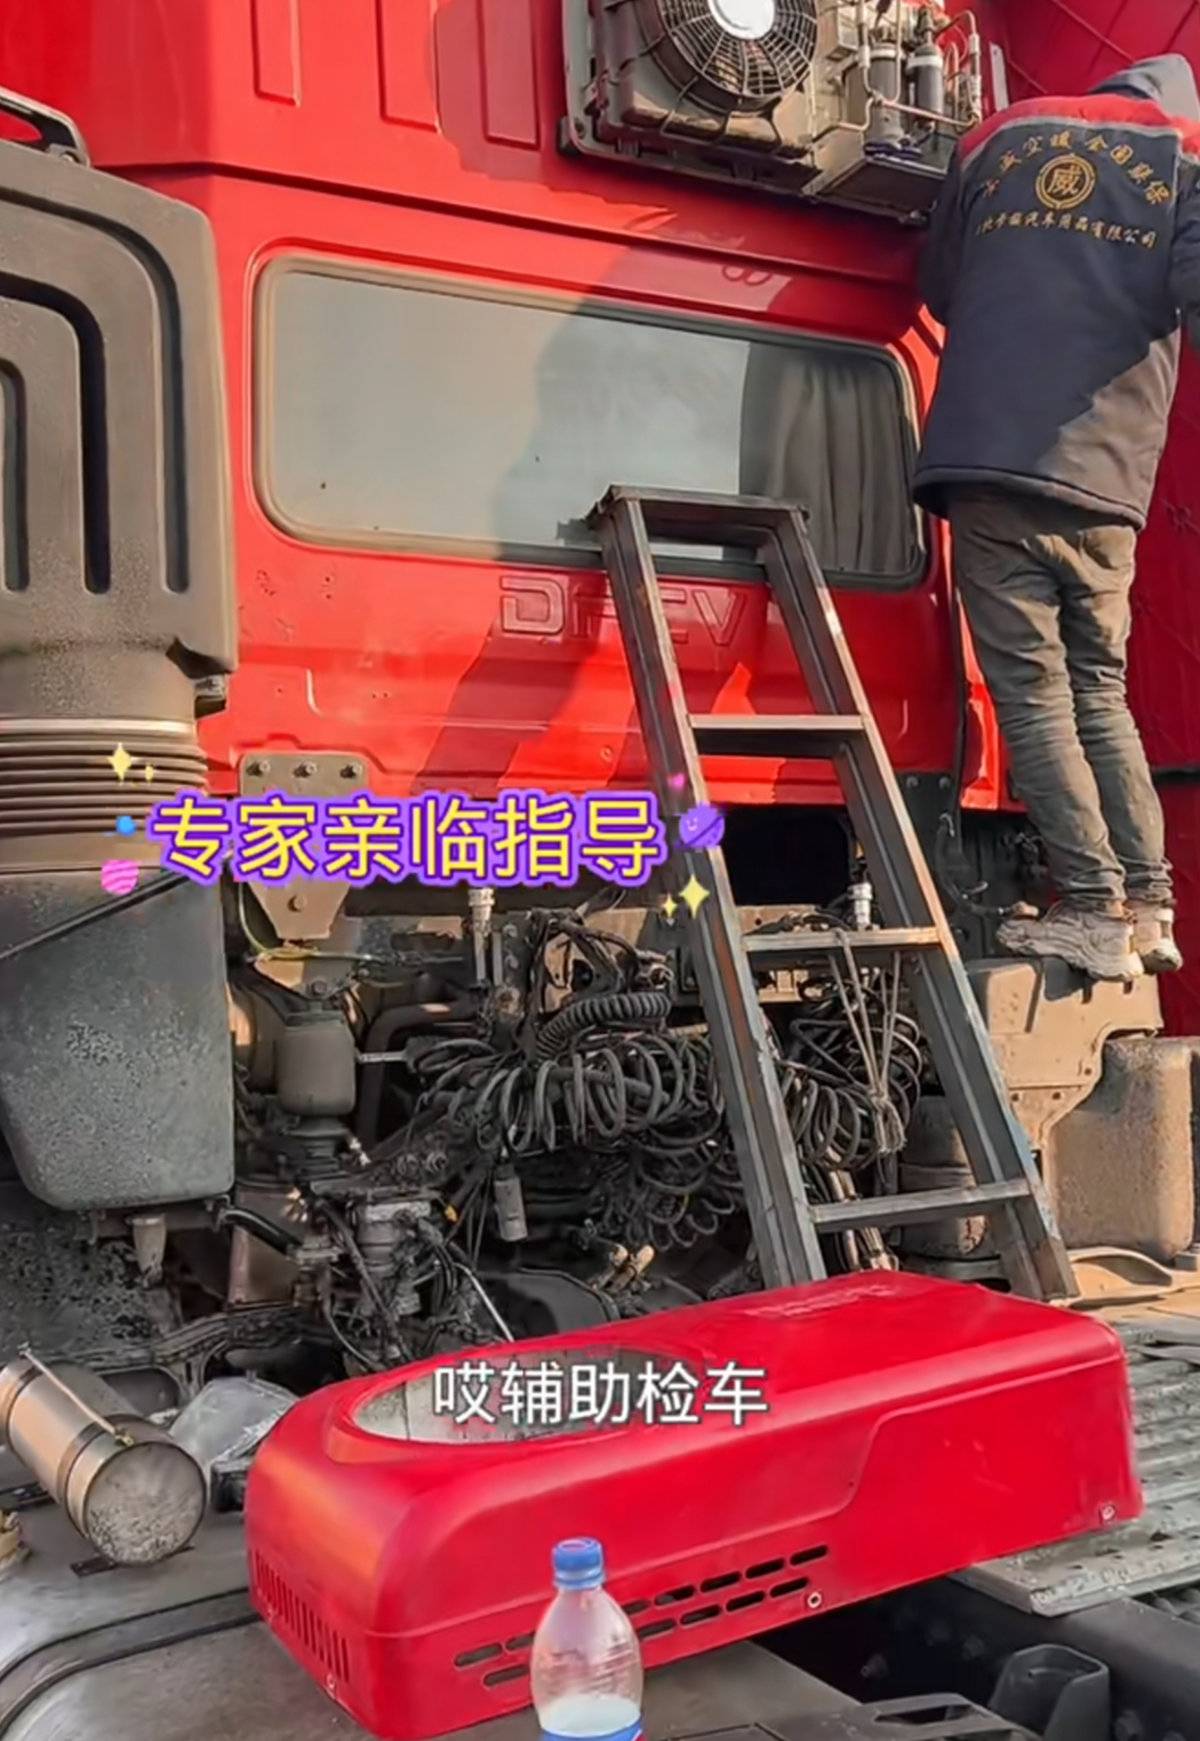 网传河北货车年检必须拆除货车驻车空调 这种规定到底合理吗？